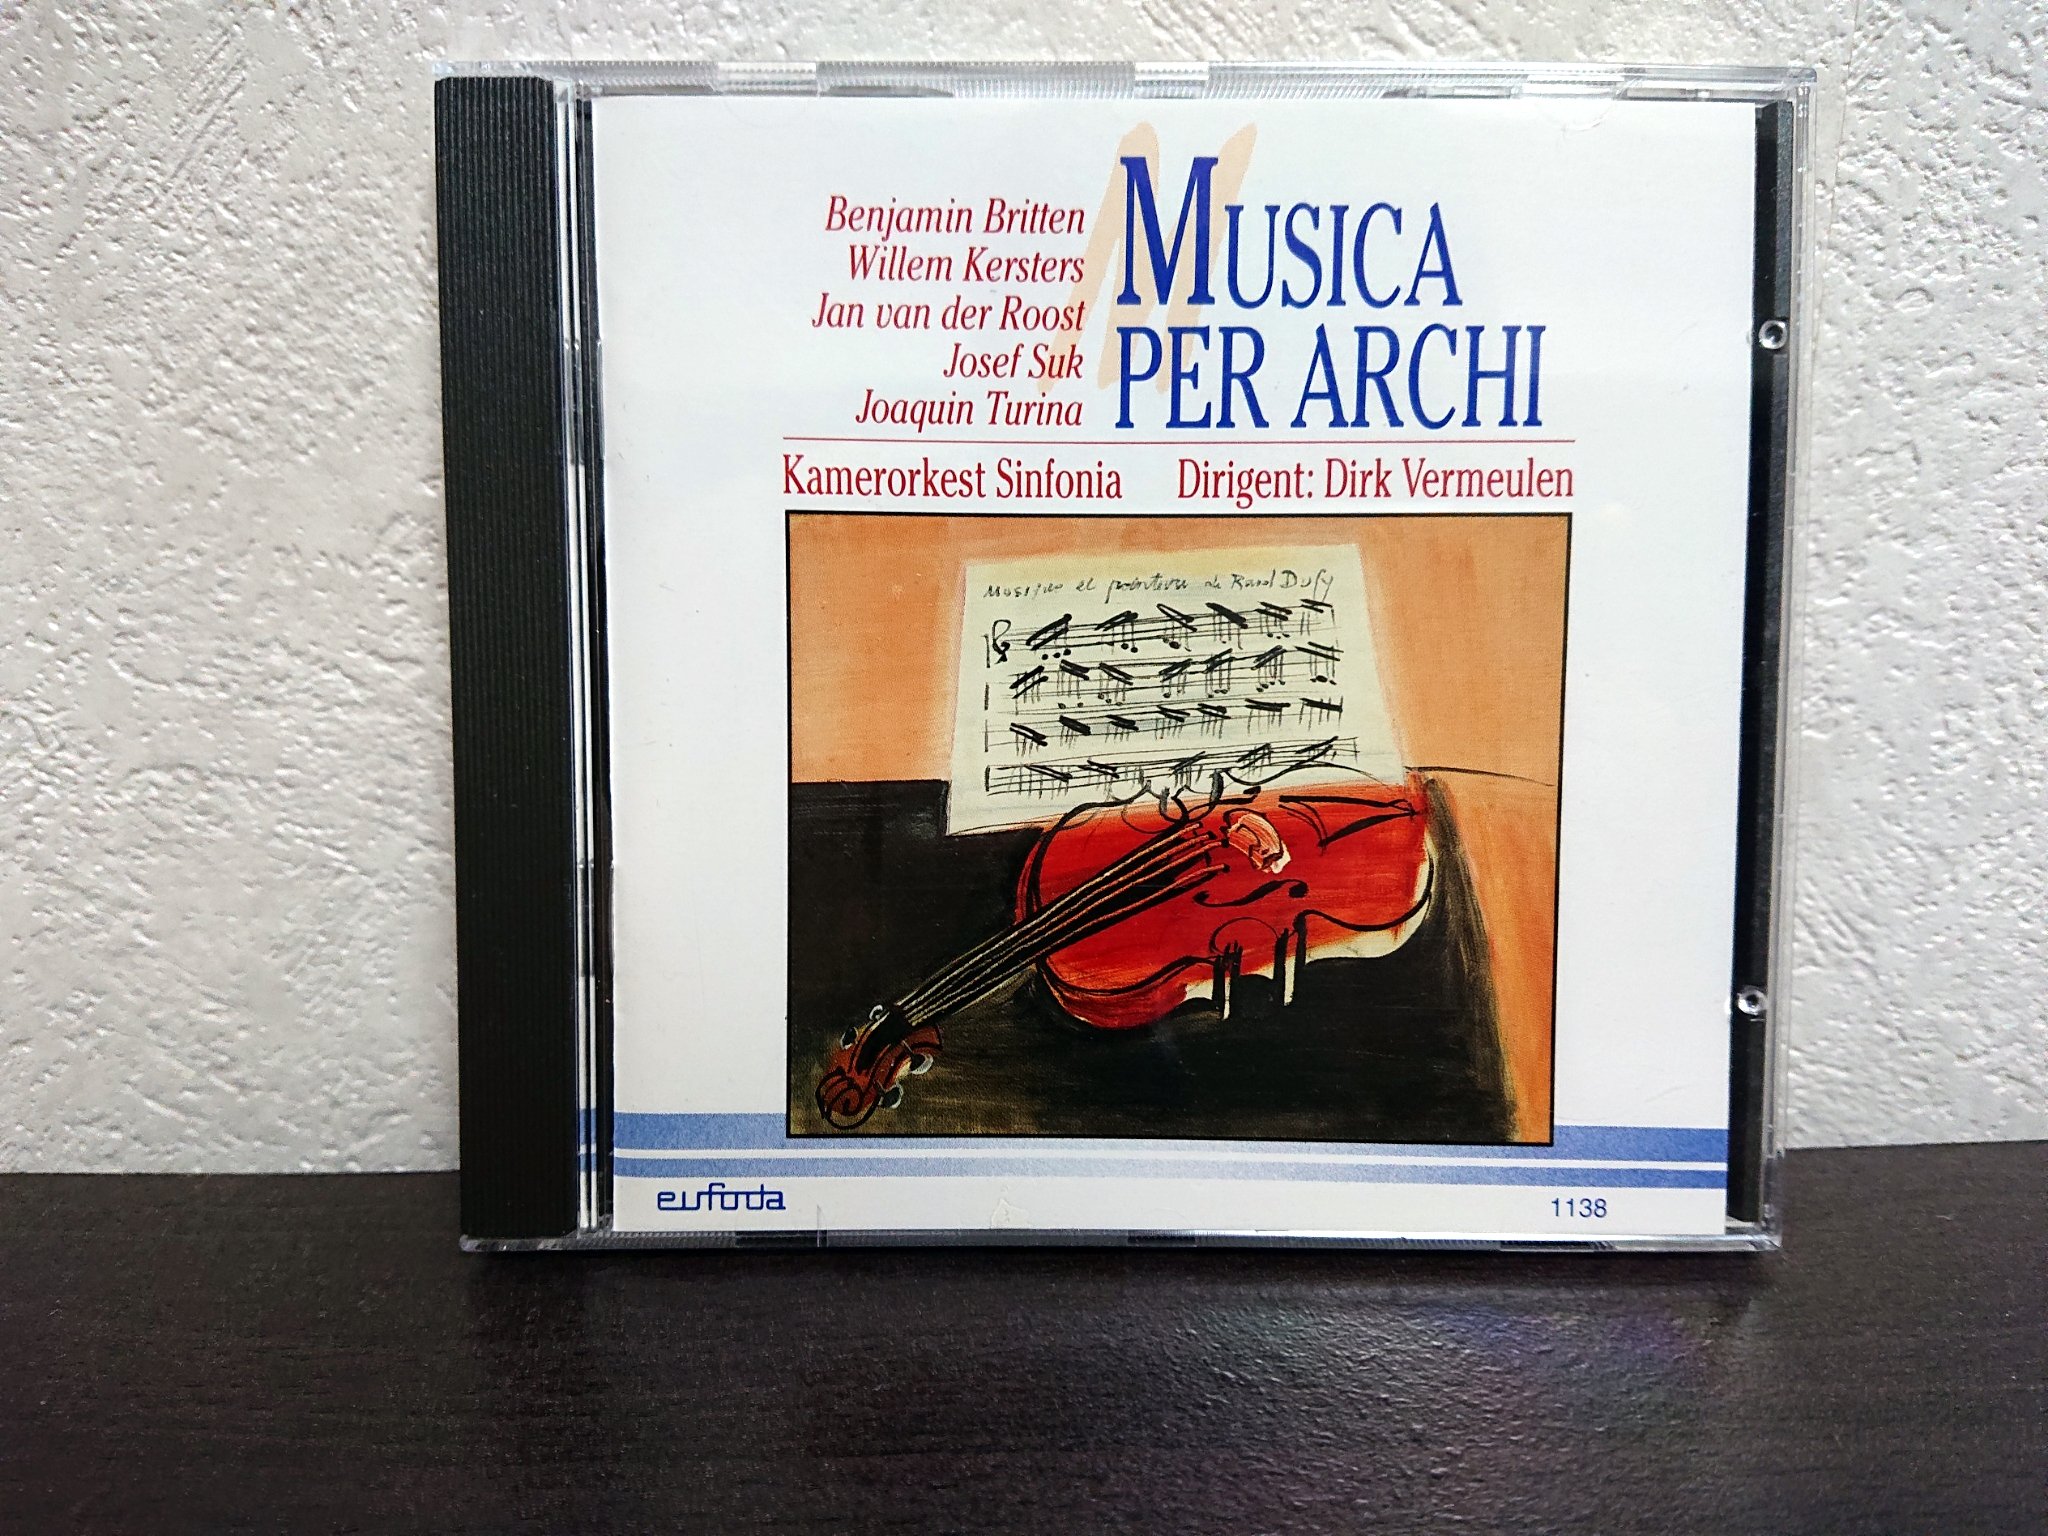 MUSICA PER ARCHI – 20世紀作曲家の弦楽作品集 | 楽器と聴衆とサブスク